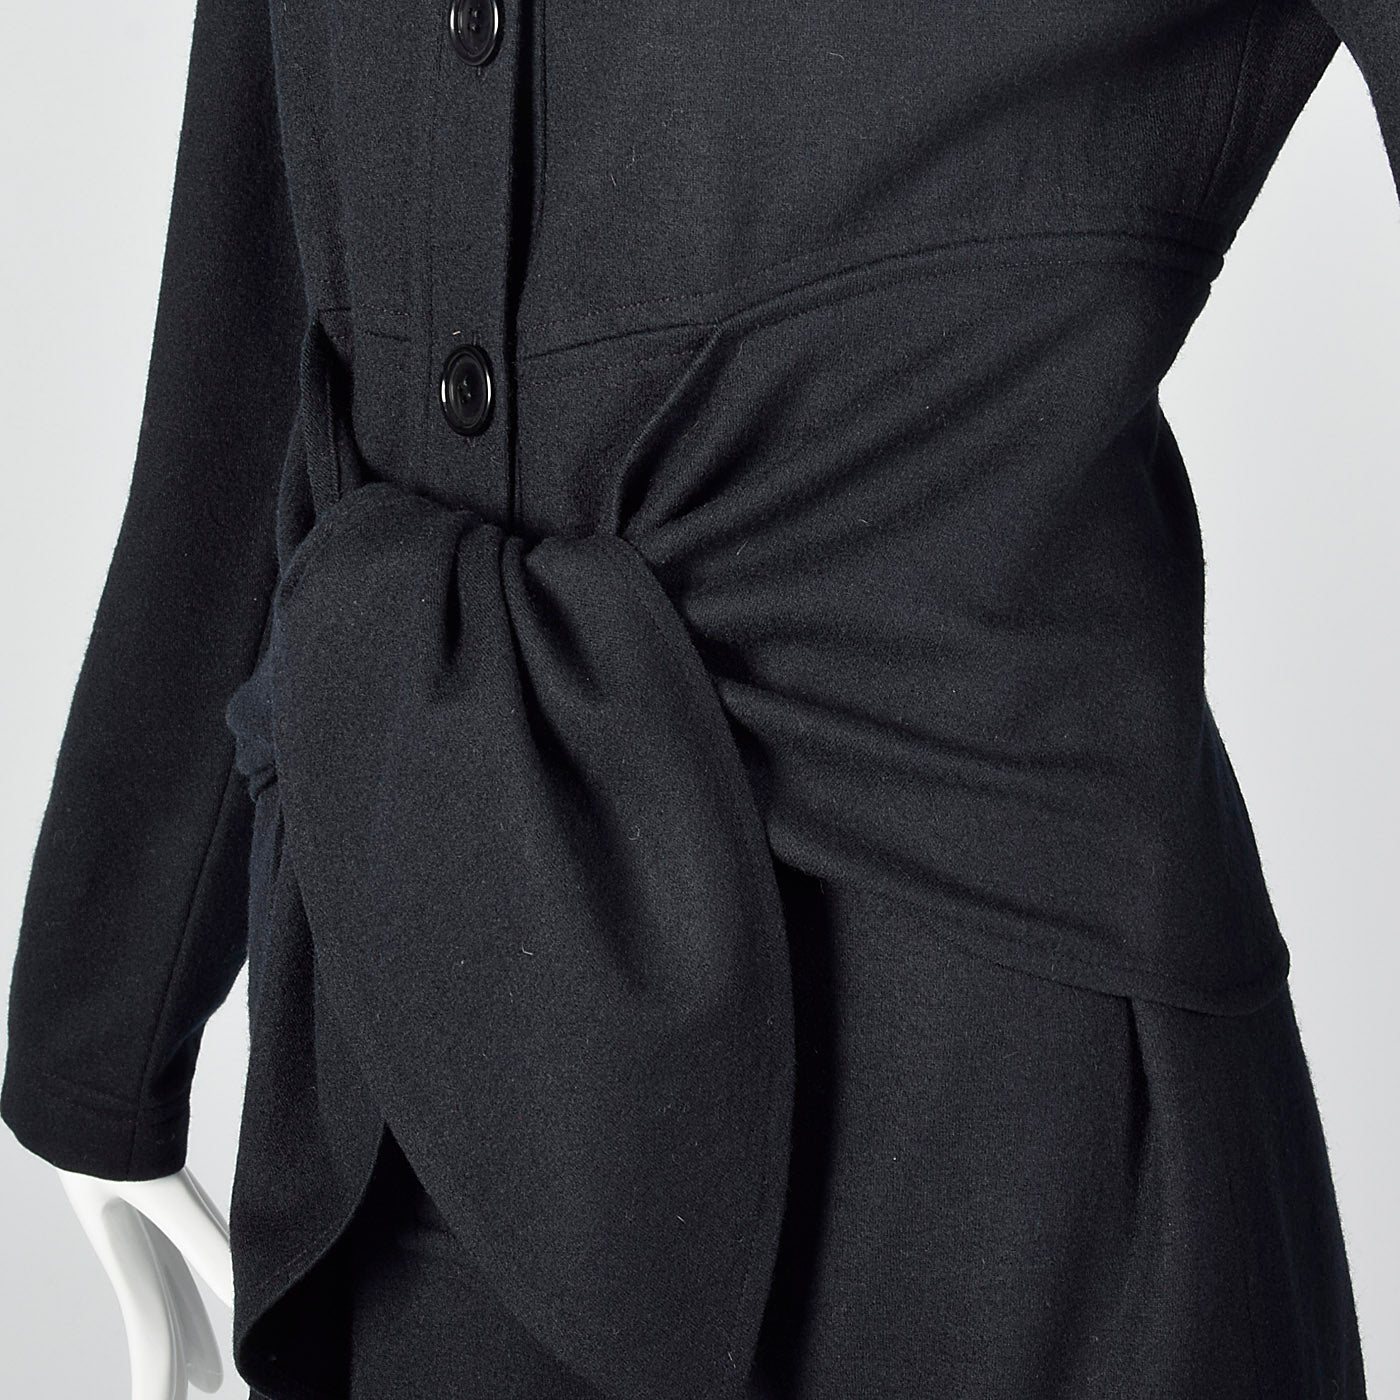 1980s Oscar de la Renta Black Wool Dress with Tie Waist